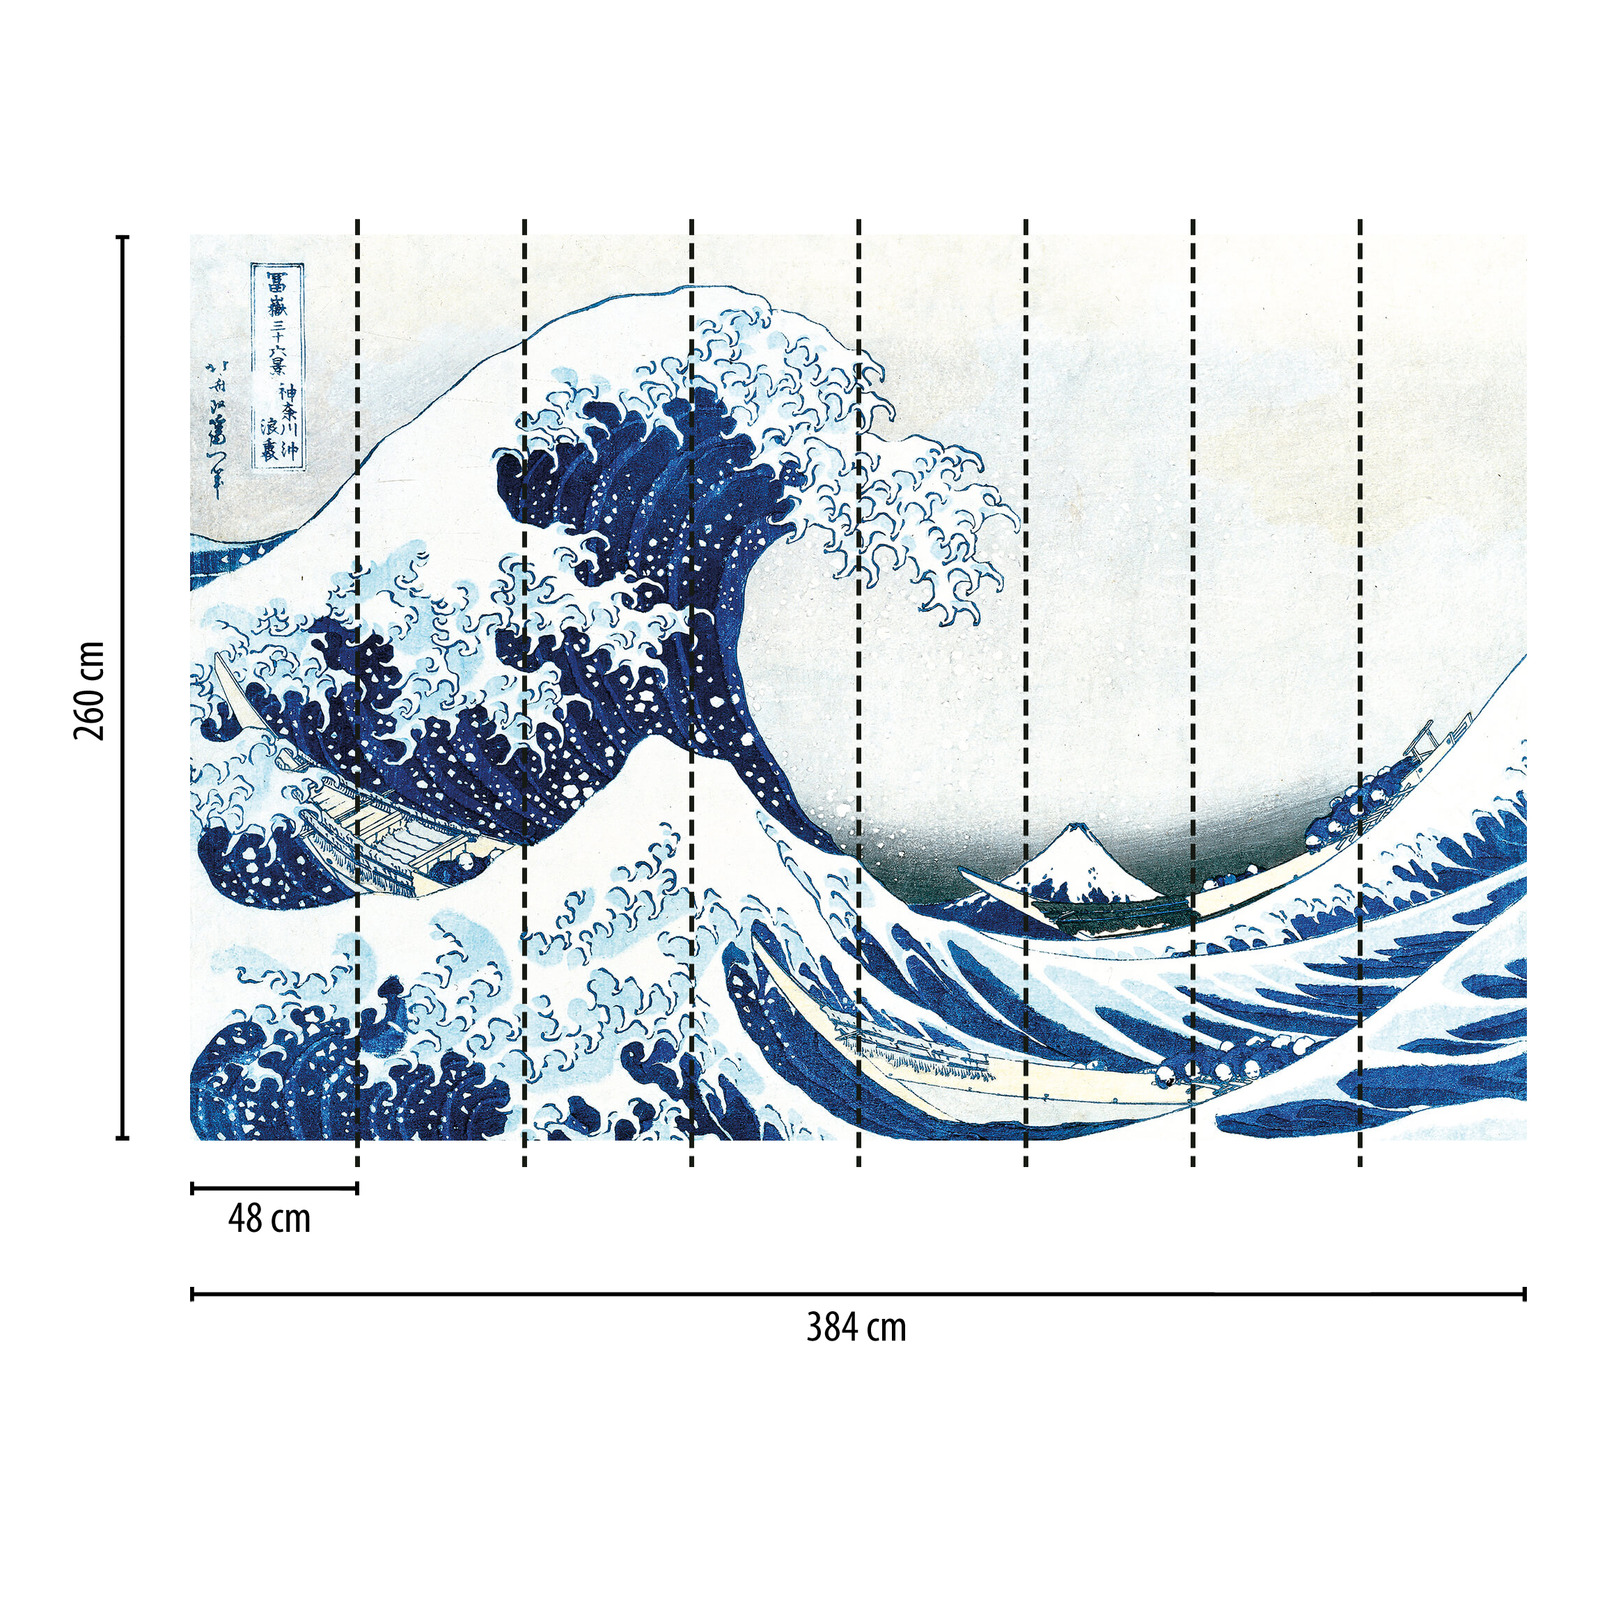             Photo wallpaper drawn wave - Blue
        